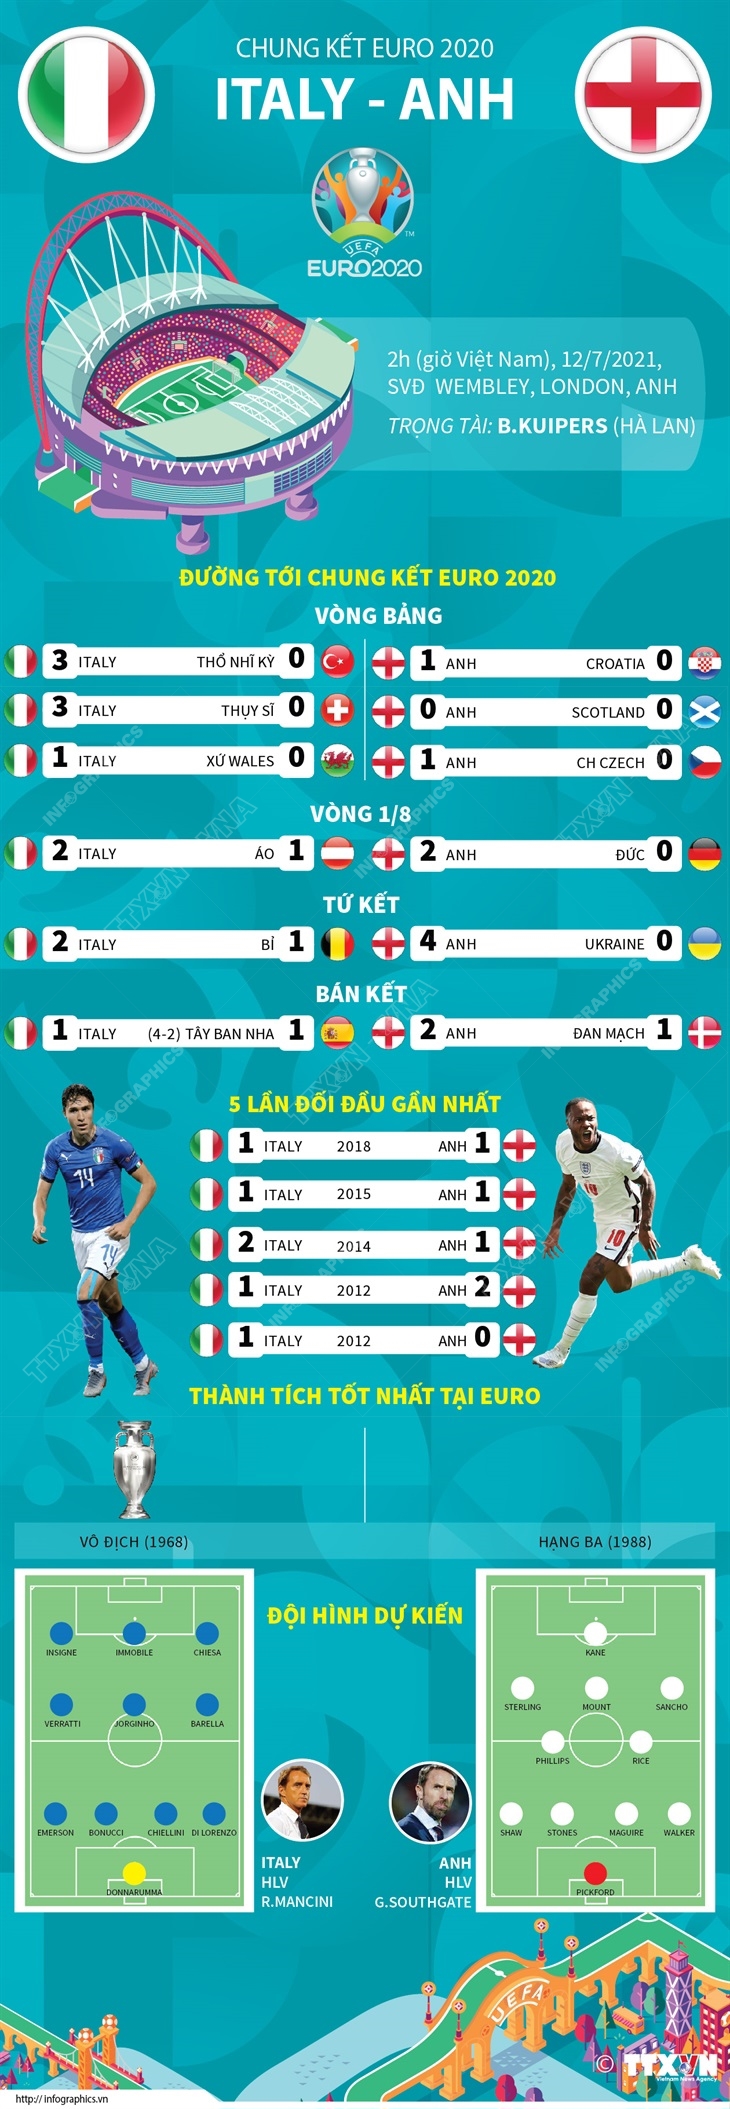 [Infographics] Đường tới chung kết EURO 2020 của hai đội Anh - Italy - Ảnh 1